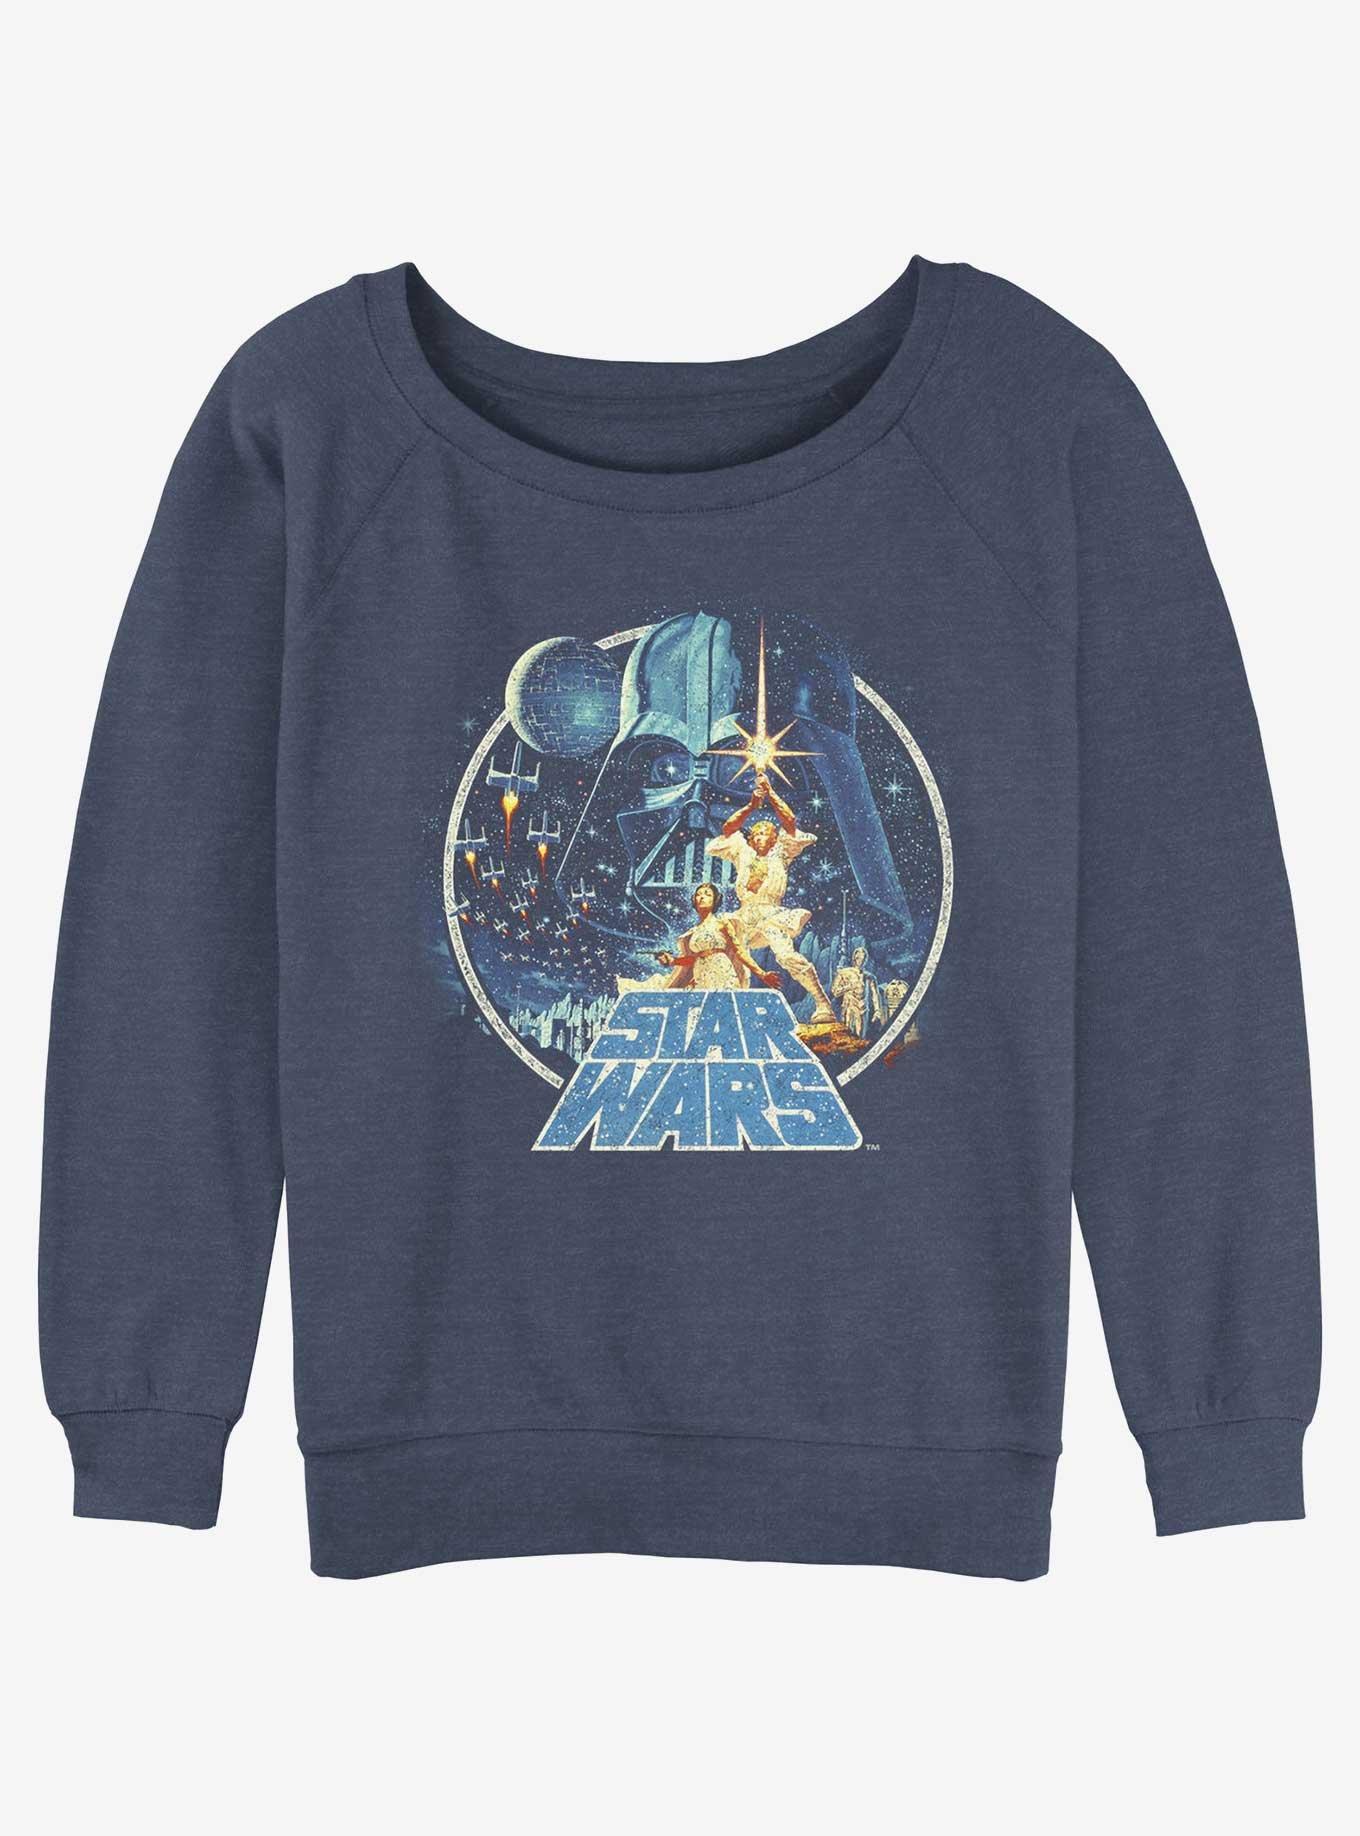 Star Wars Vintage Victory Girls Slouchy Sweatshirt